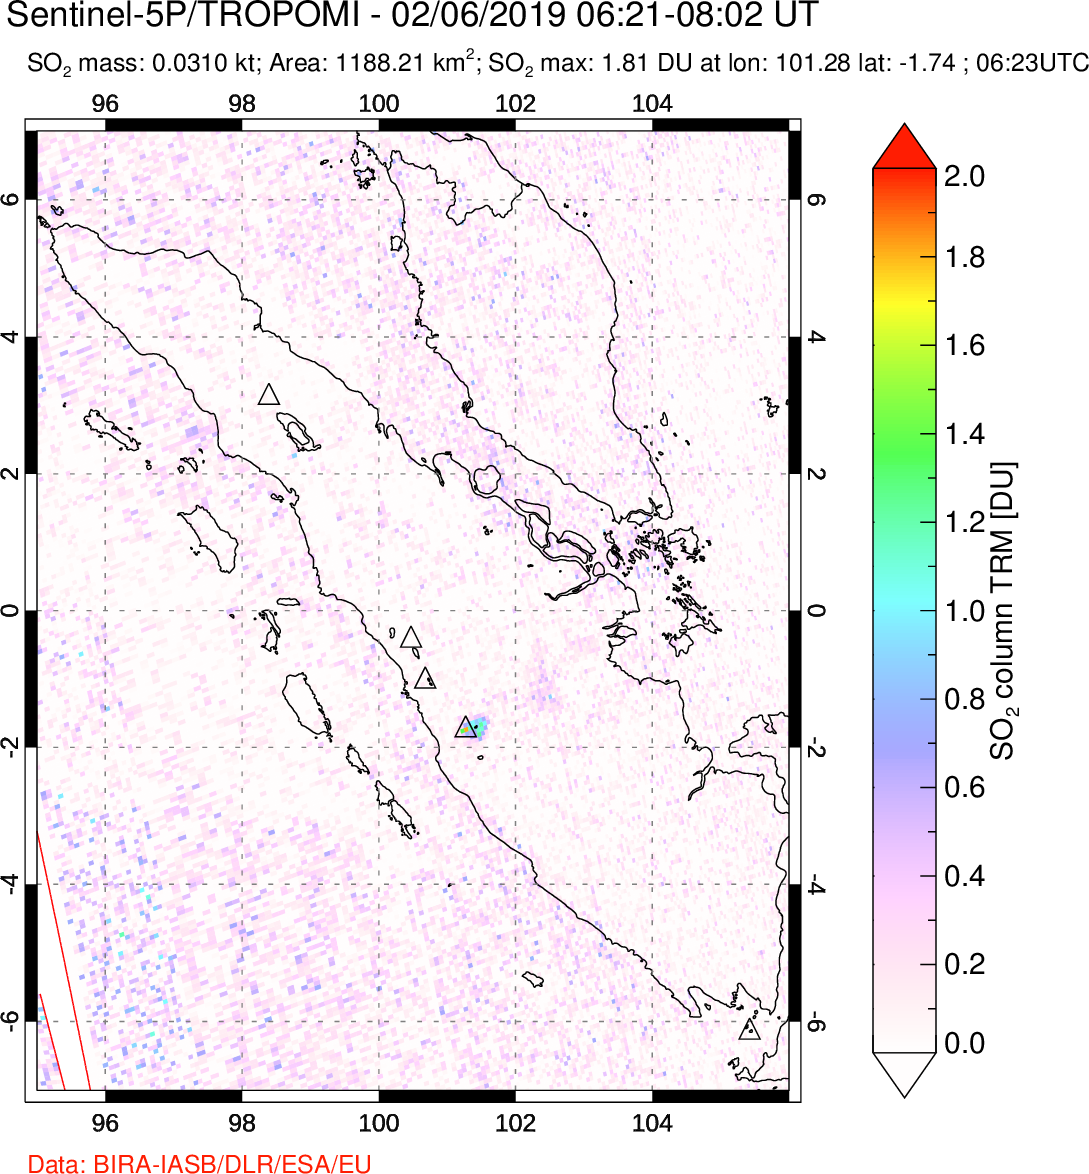 A sulfur dioxide image over Sumatra, Indonesia on Feb 06, 2019.